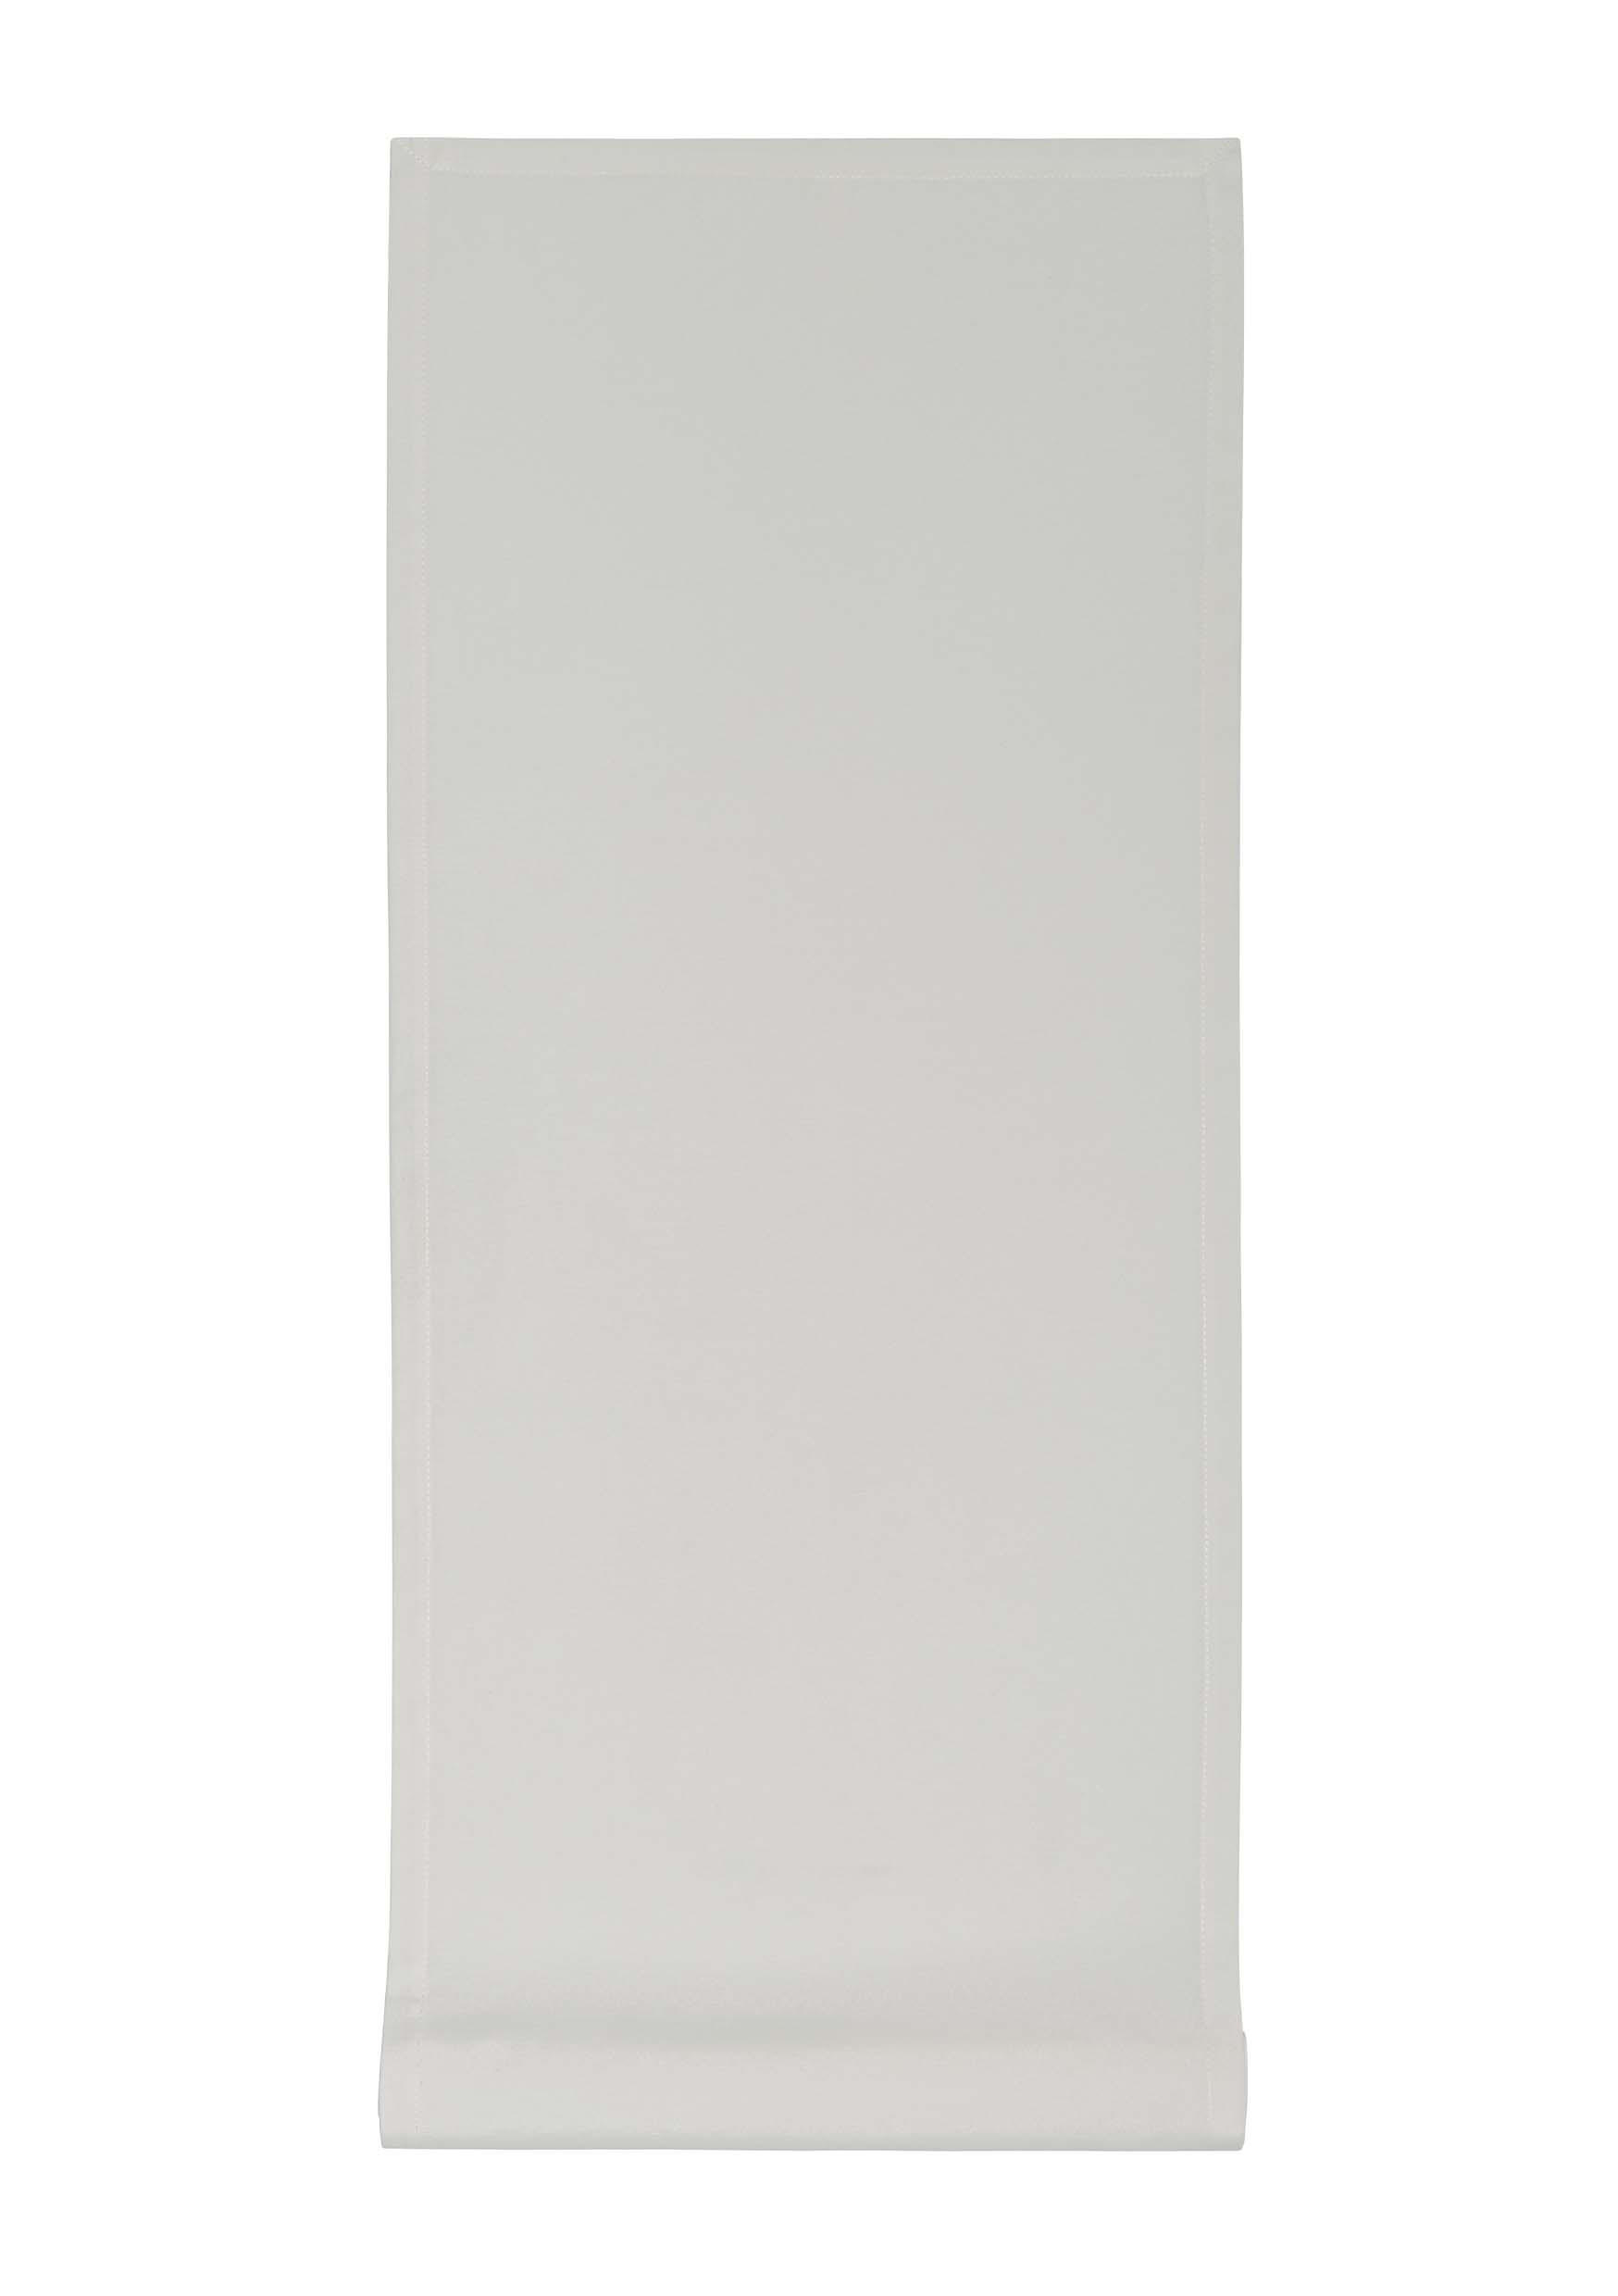 Boxxx BĚHOUN NA STŮL, 40/150 cm, barvy stříbra - barvy stříbra